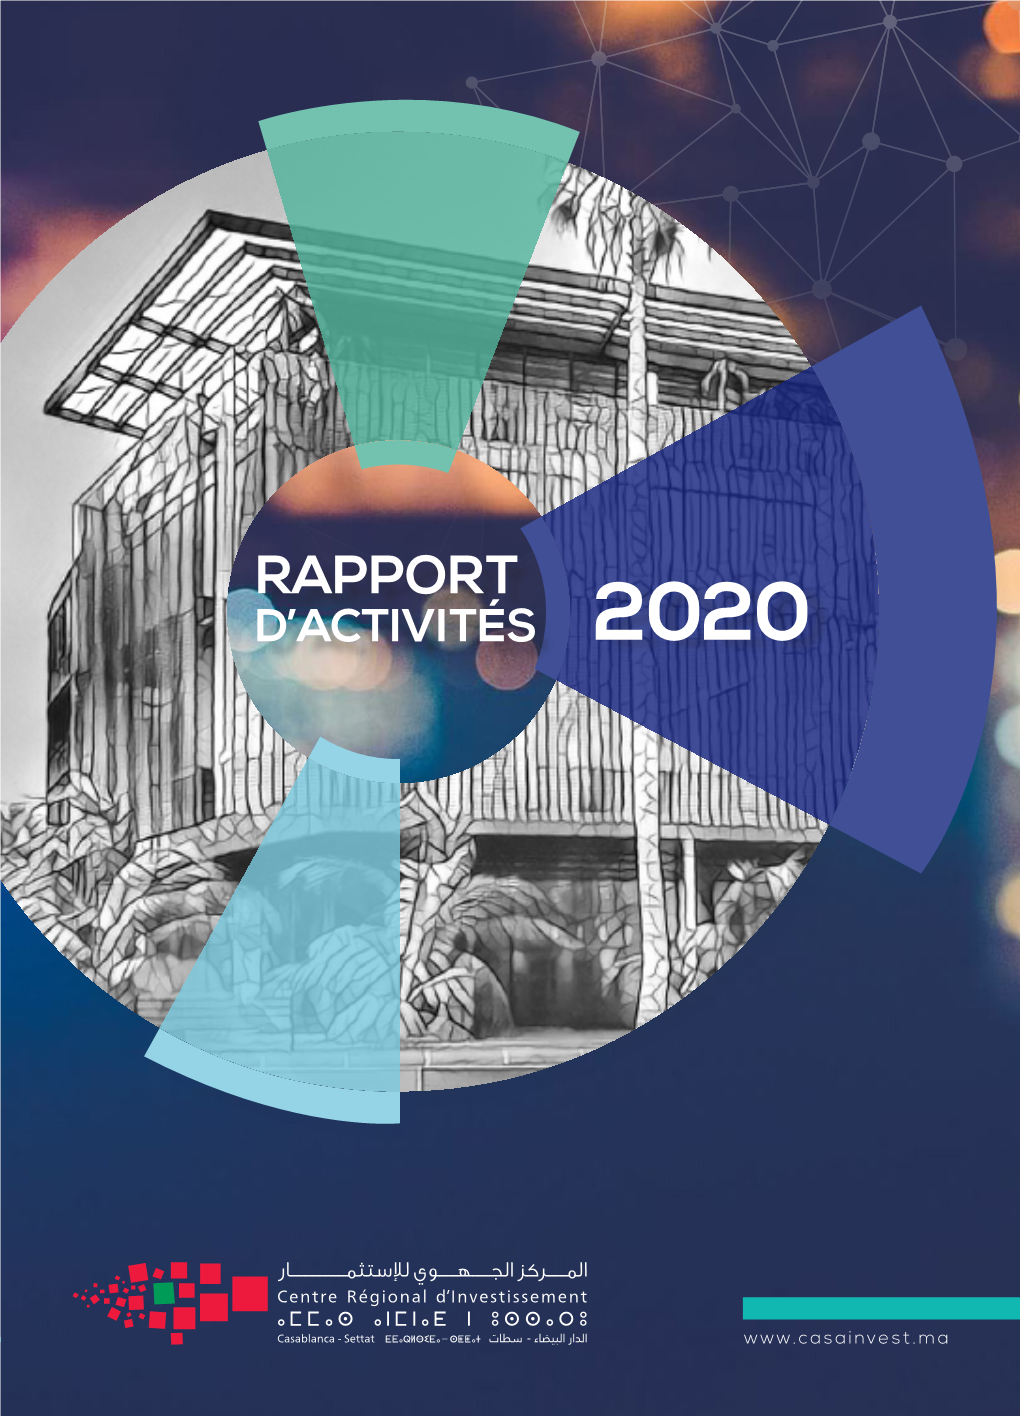 Rapport D’Activités 2020